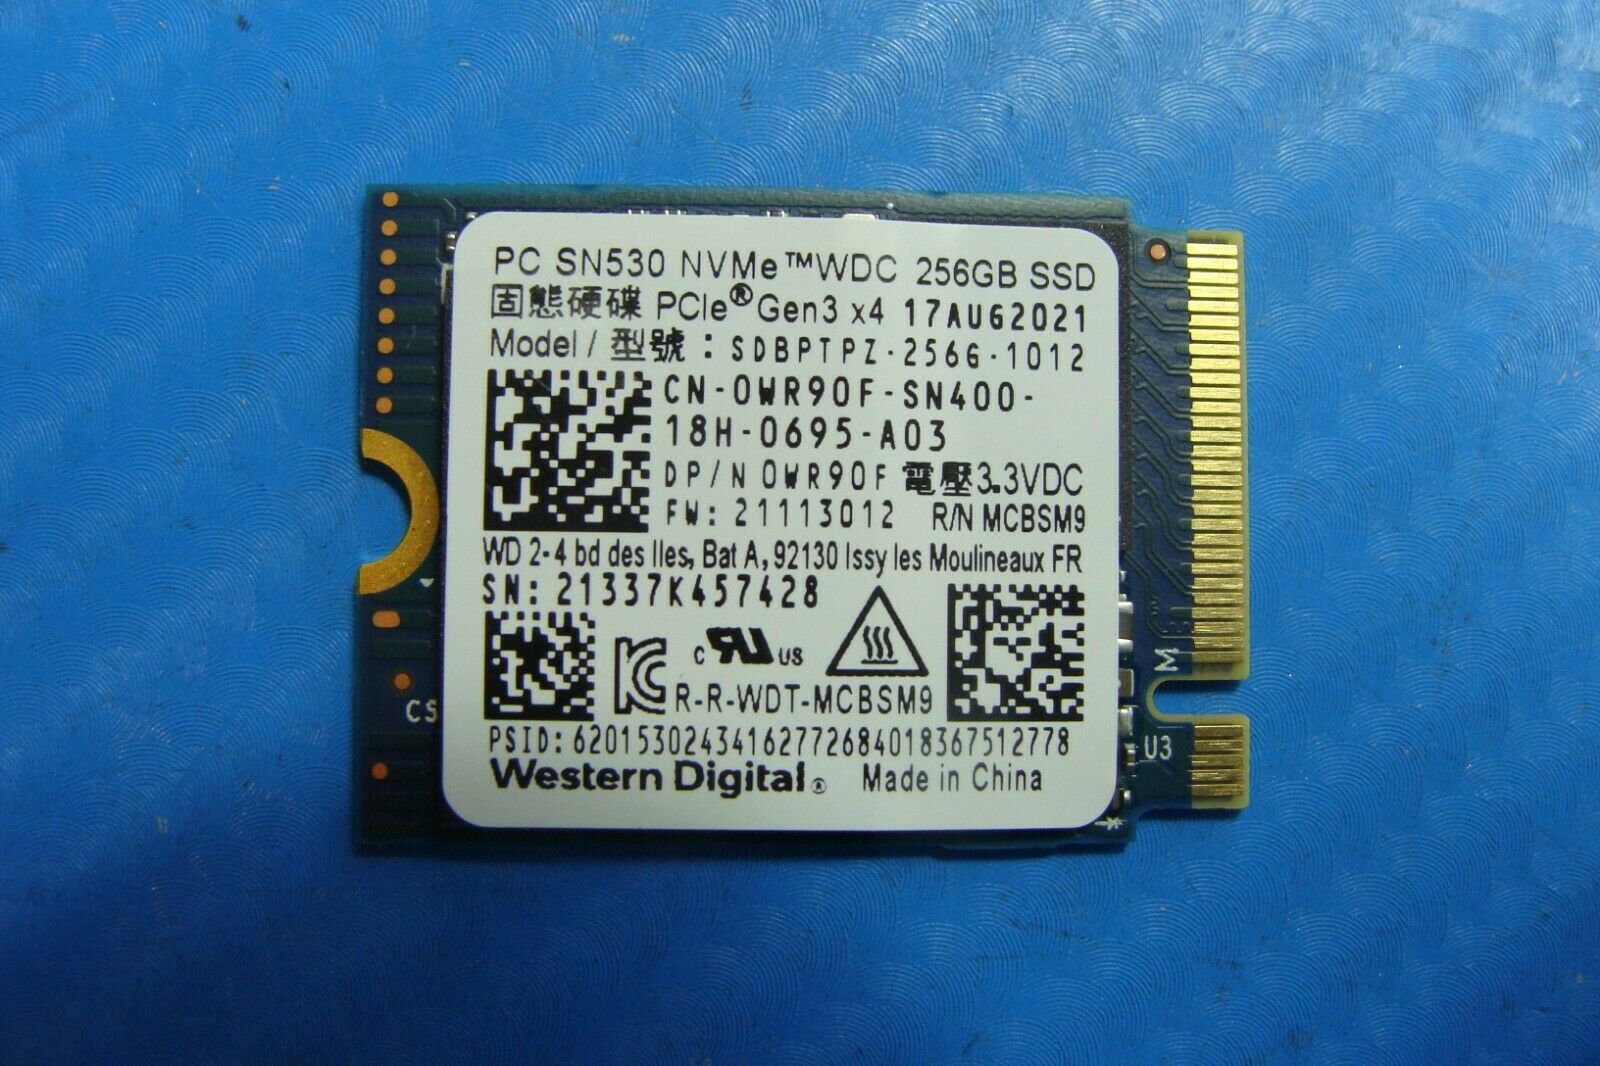 Dell XPS 13-9305 13.3 Western Digital SN530 256GB NVMe M.2 Ssd sdbptpz-256g-1012 